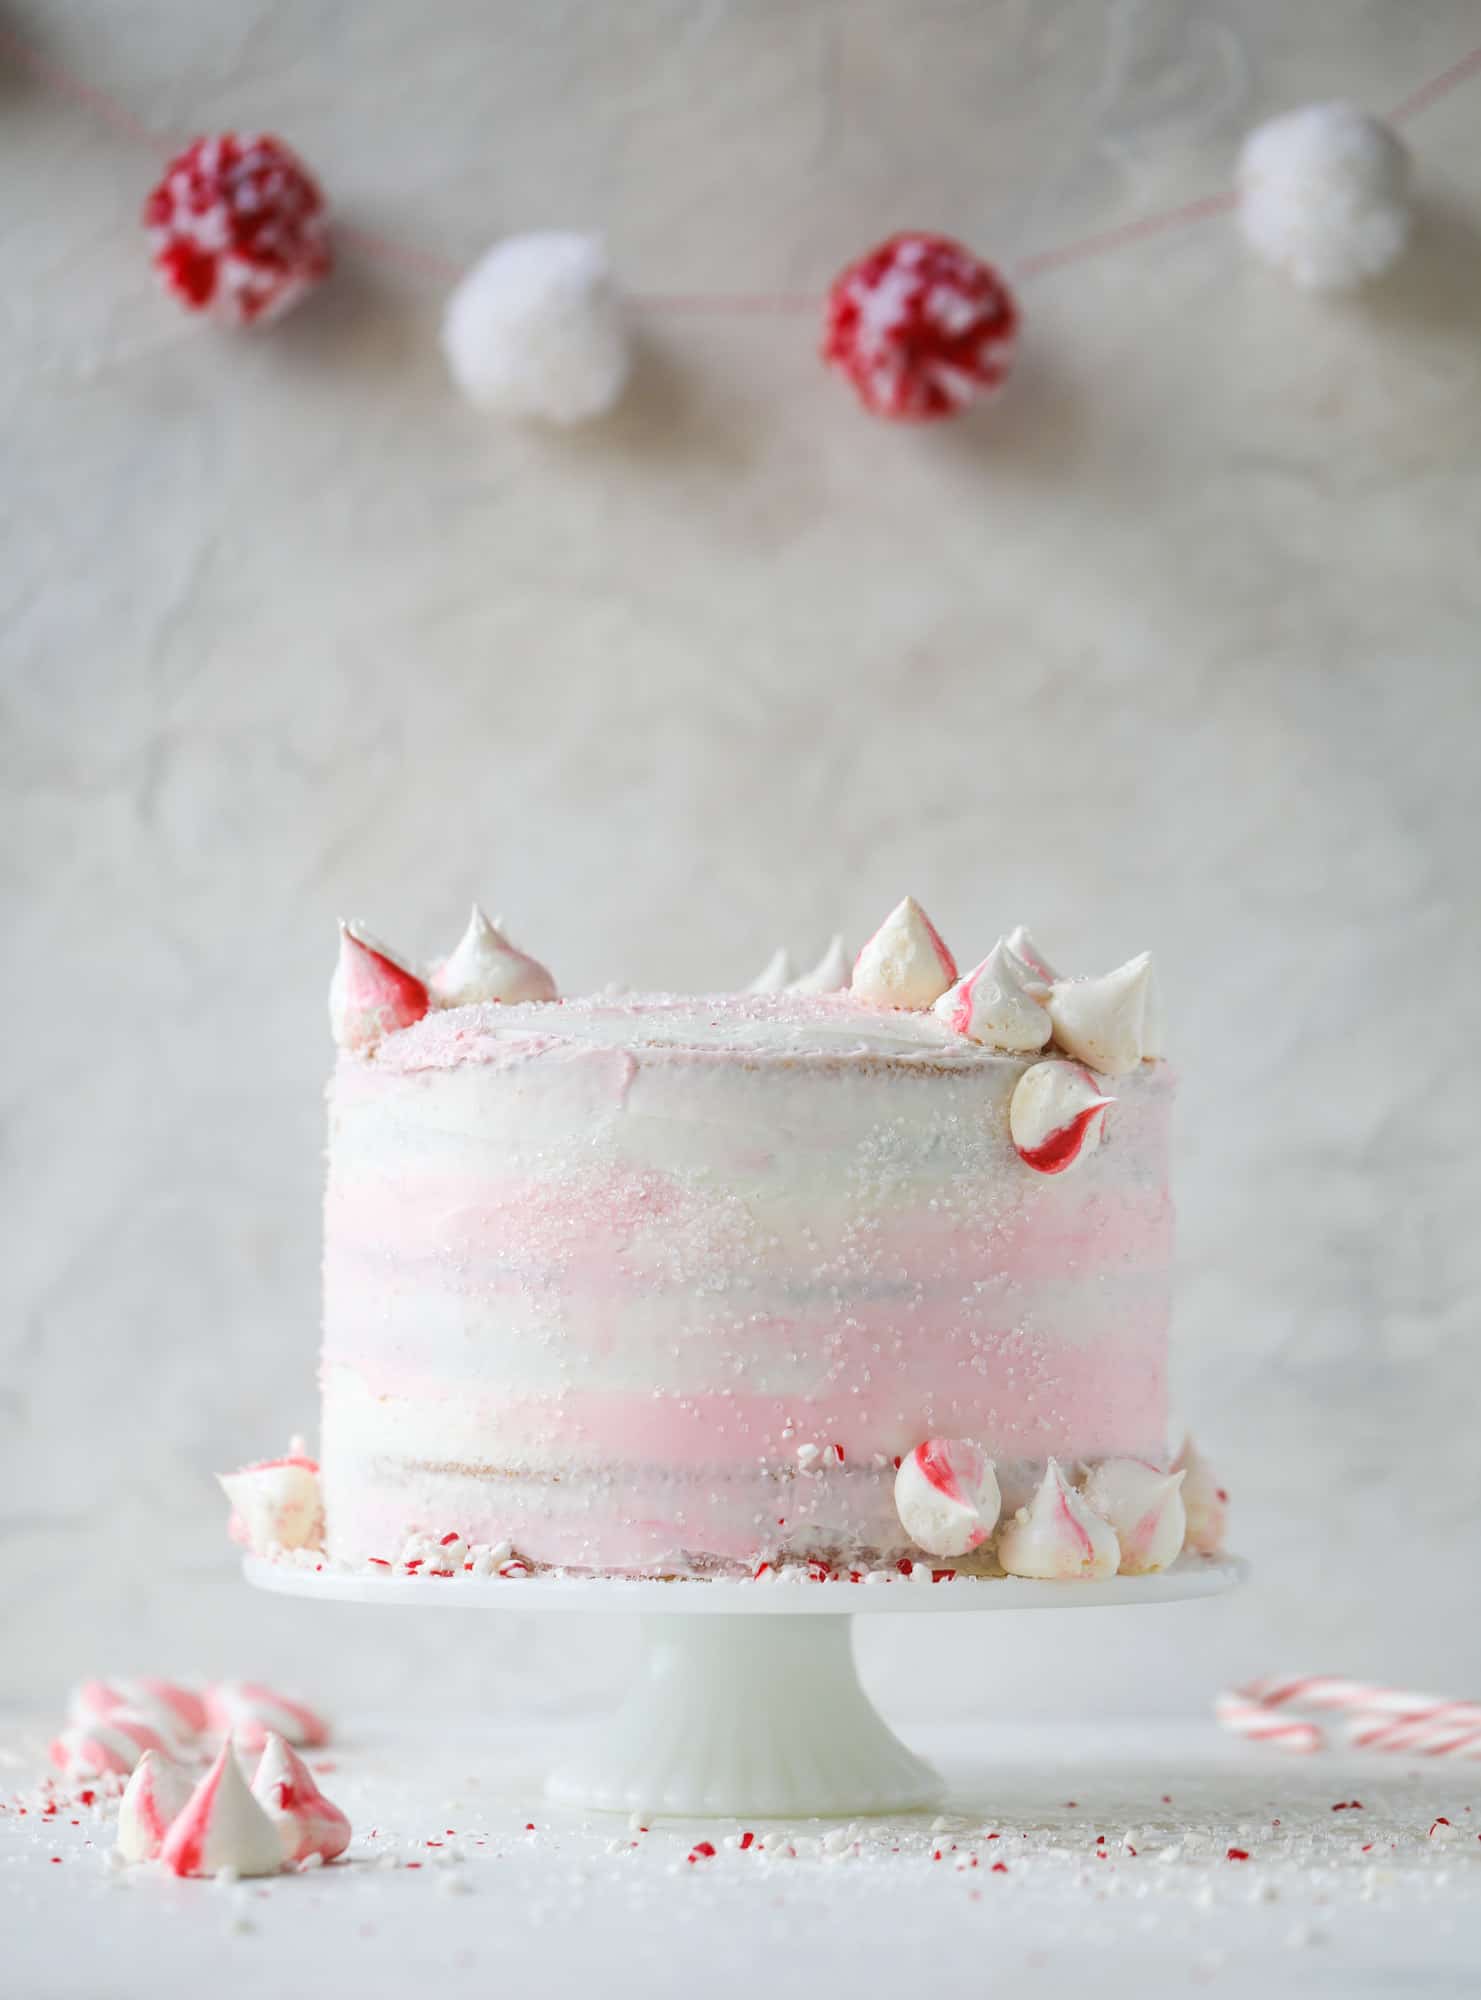 这个粉色薄荷蛋糕是节日和美味的节日!香草蛋糕糖霜和薄荷奶油芝士糖霜，上面覆盖着闪亮的糖和薄荷蛋白霜。不能可爱!我# pinkpeppermint #蛋糕